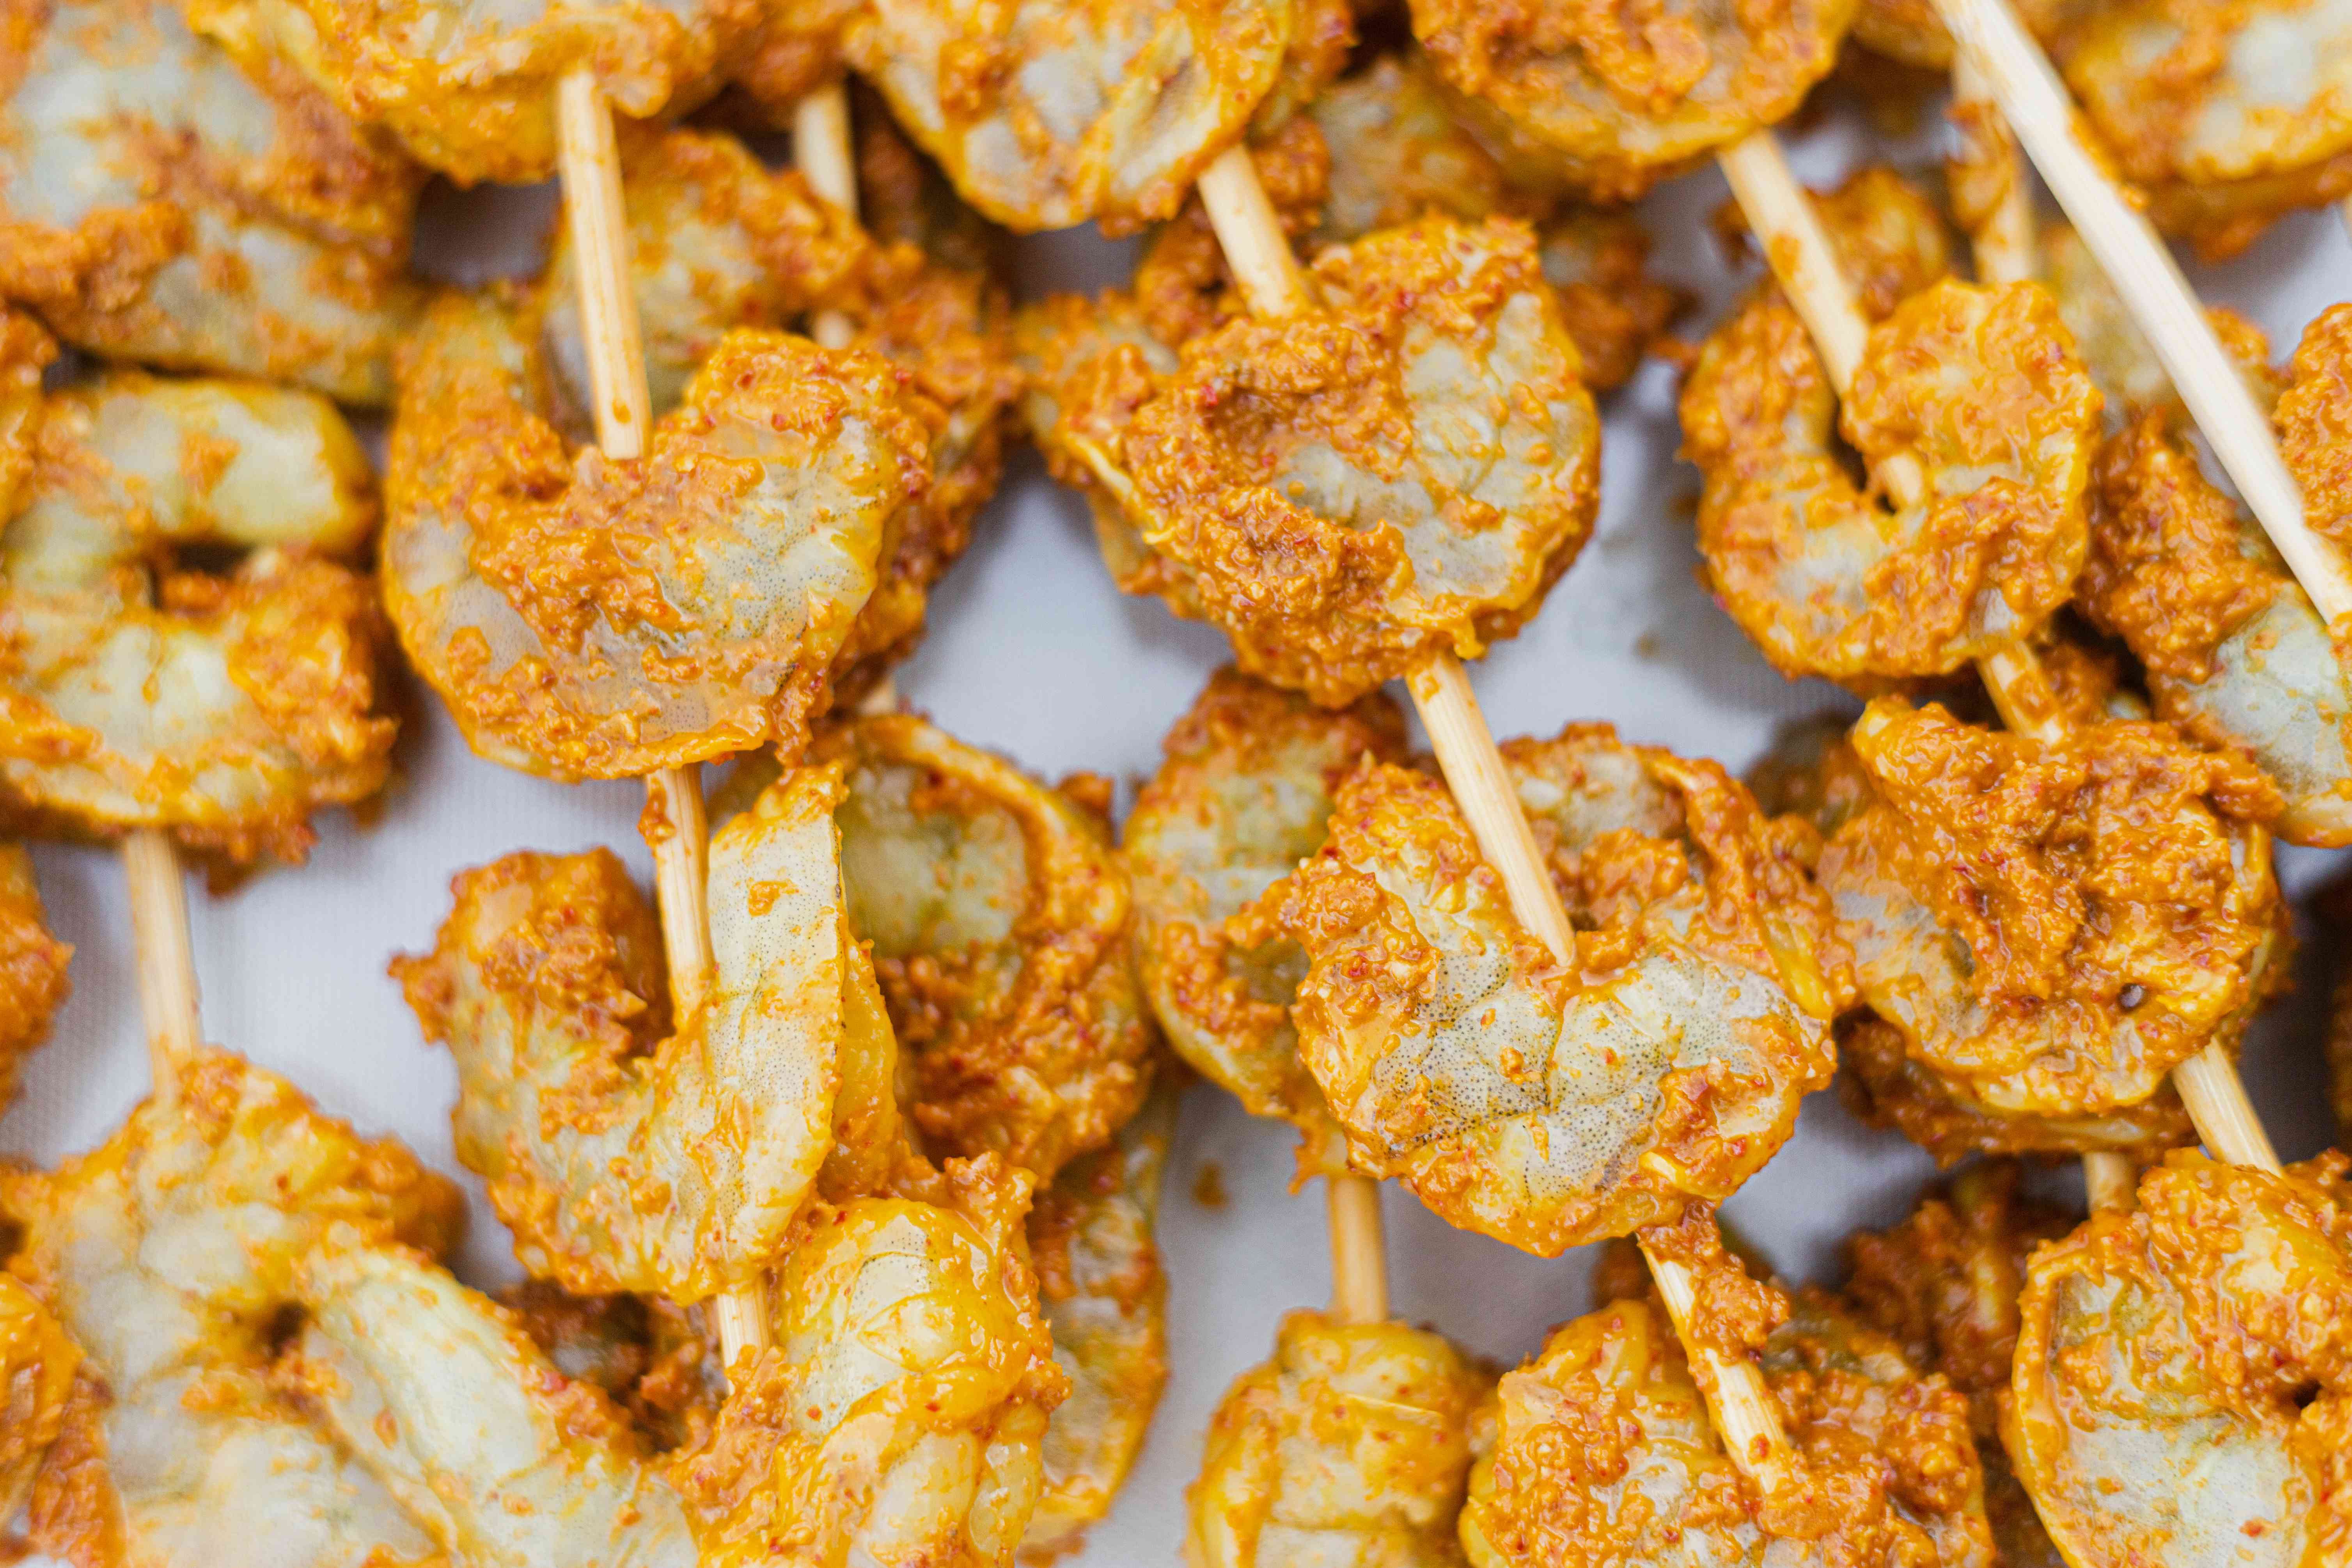 Skewer Shrimp for Grilled Shrimp with Konkani-Inspired Masala